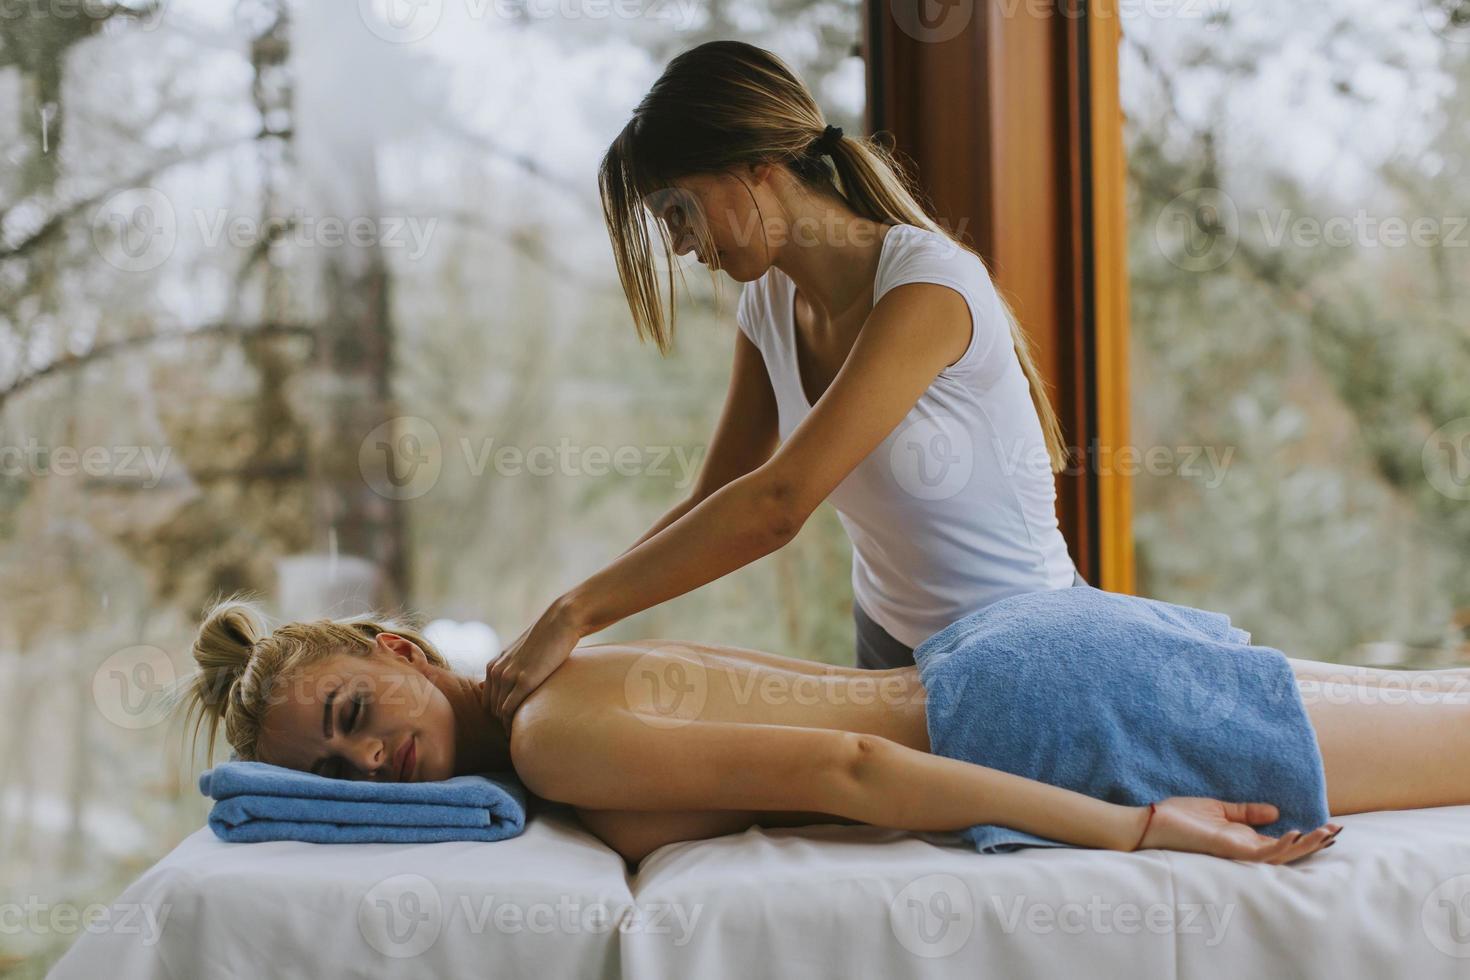 Belle jeune femme allongée et ayant un massage du cou dans un salon spa pendant la saison d'hiver photo